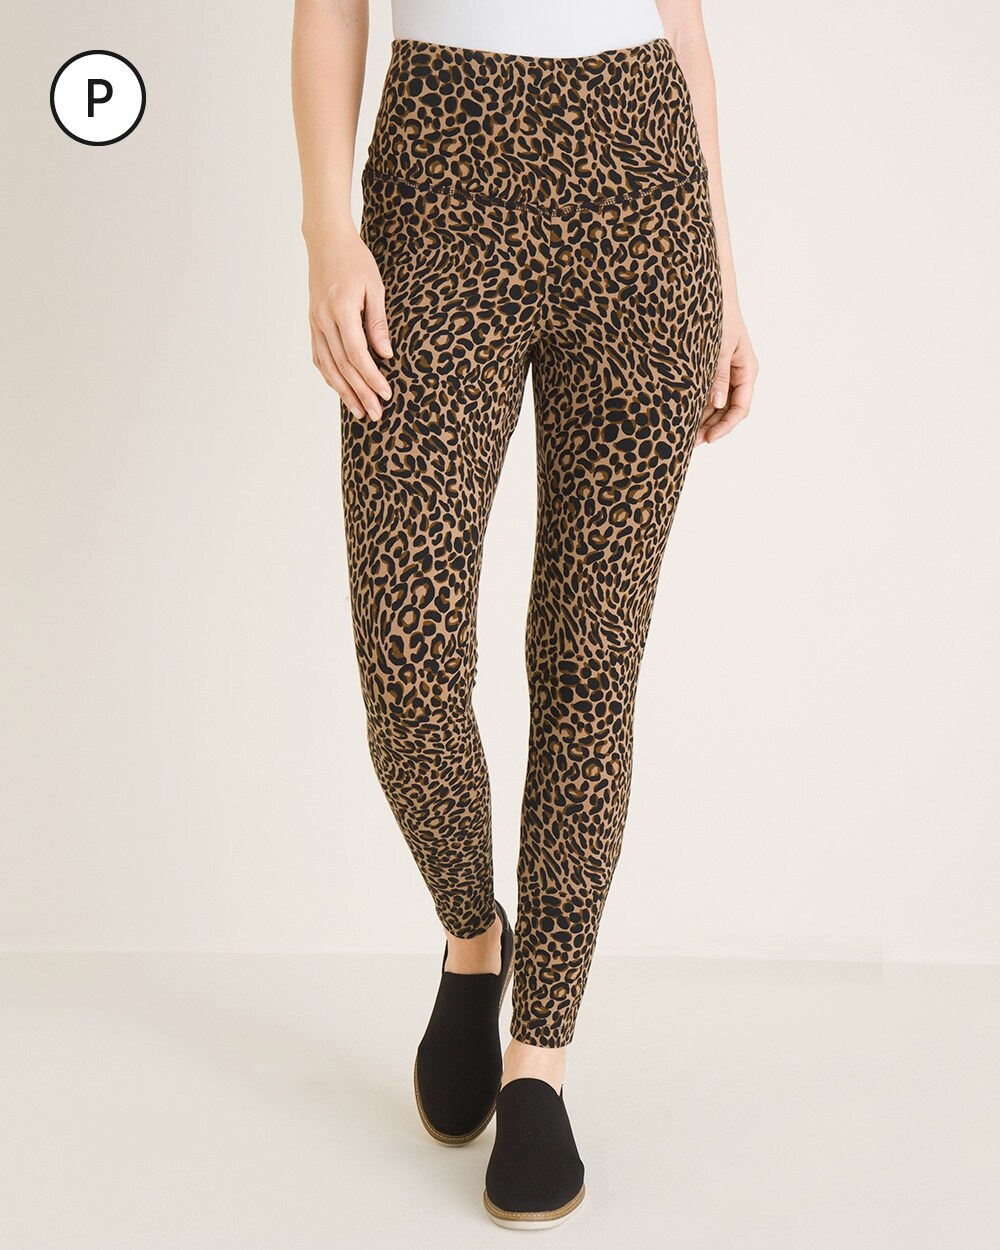 Zenergy So Slimming Petite Cheetah-Print Leggings